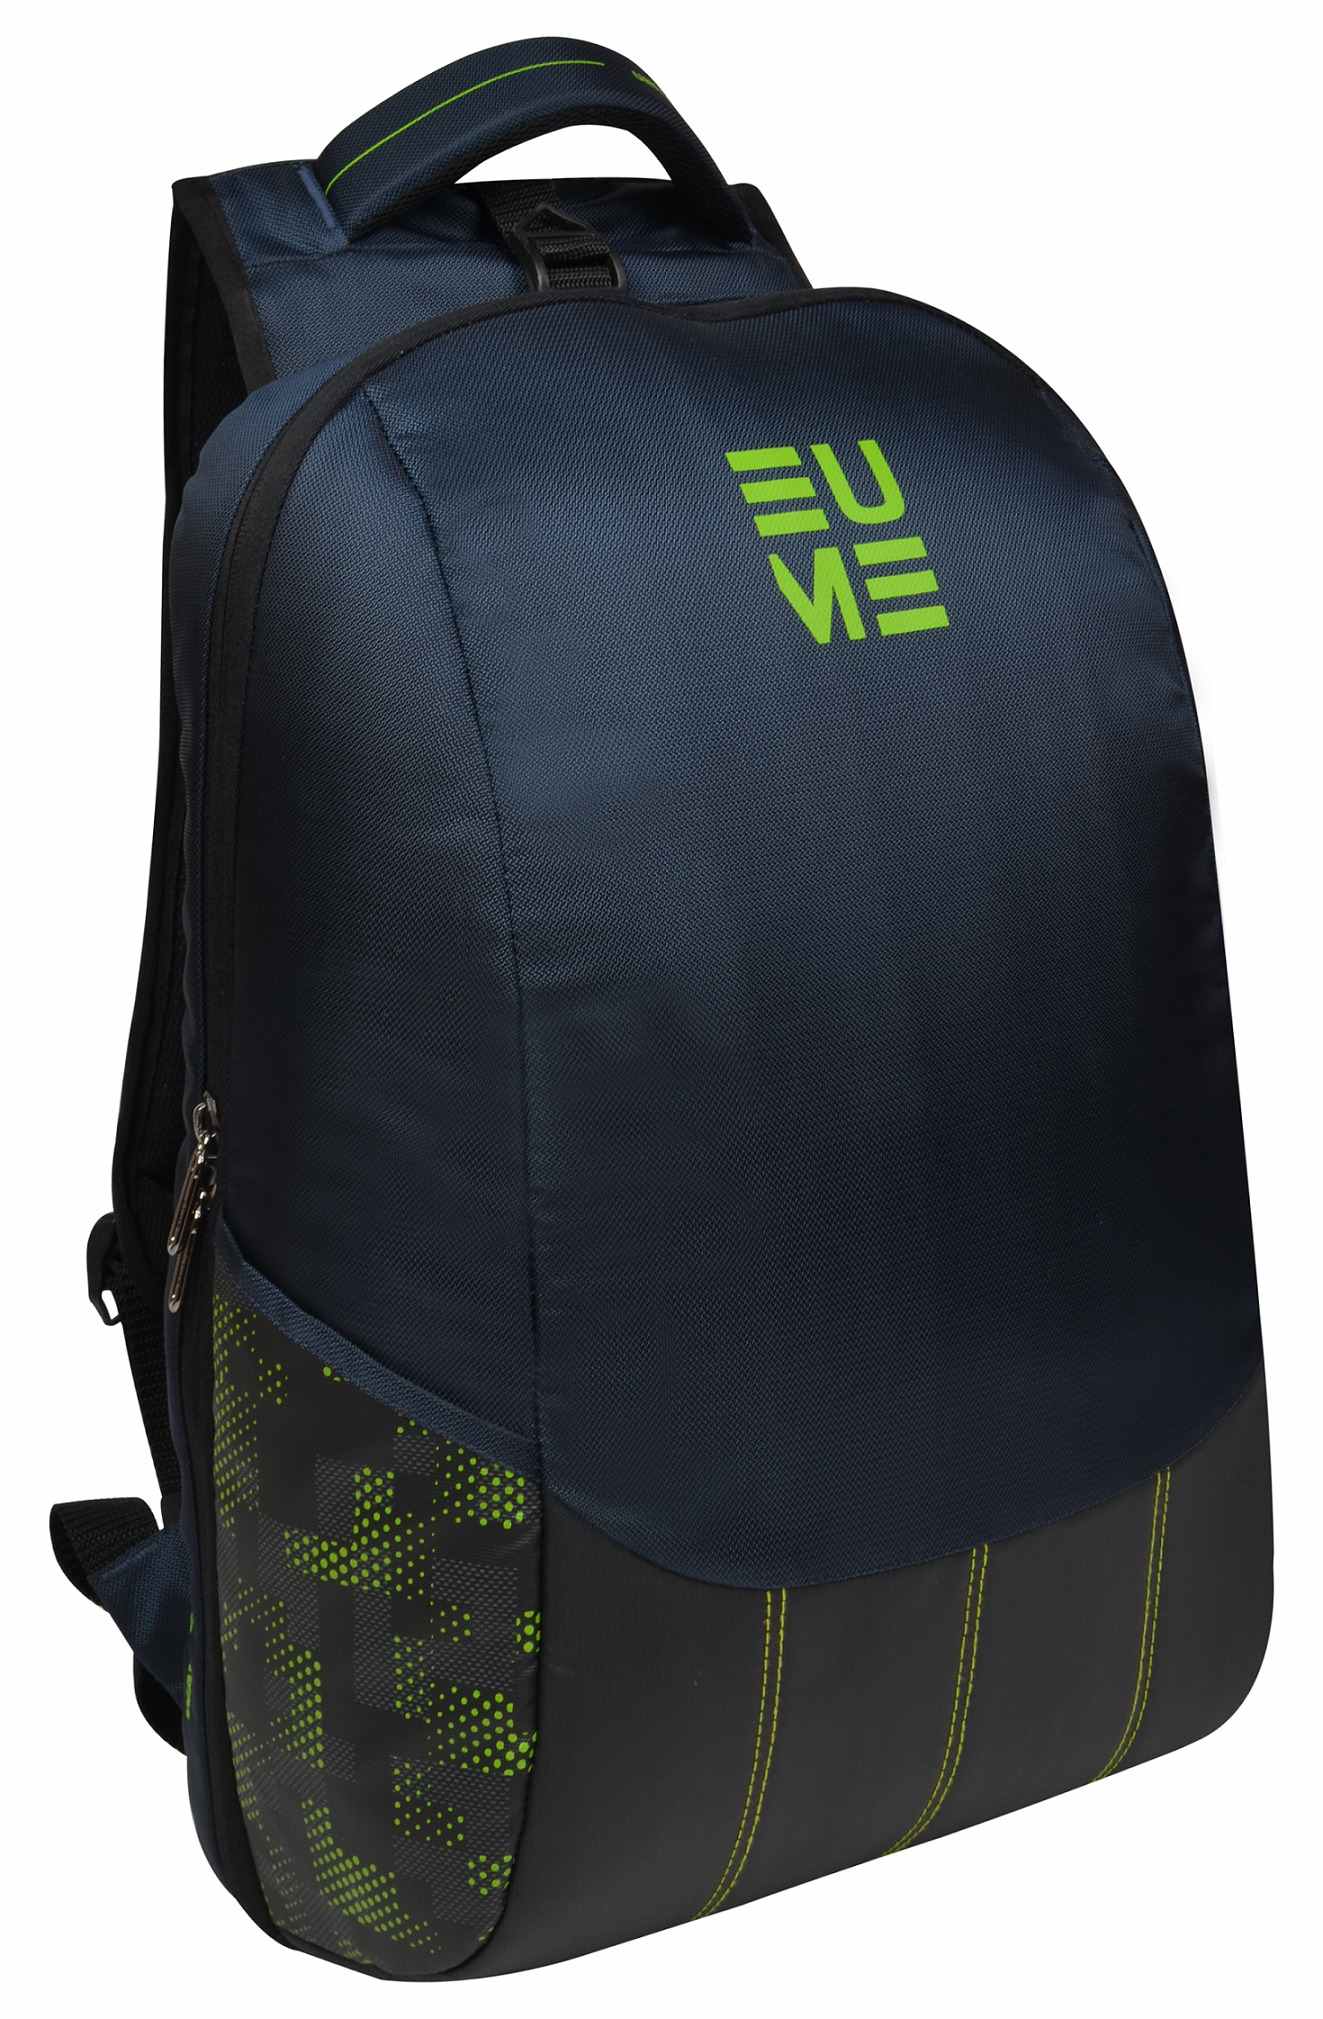 EUME Wave Massager Backpack